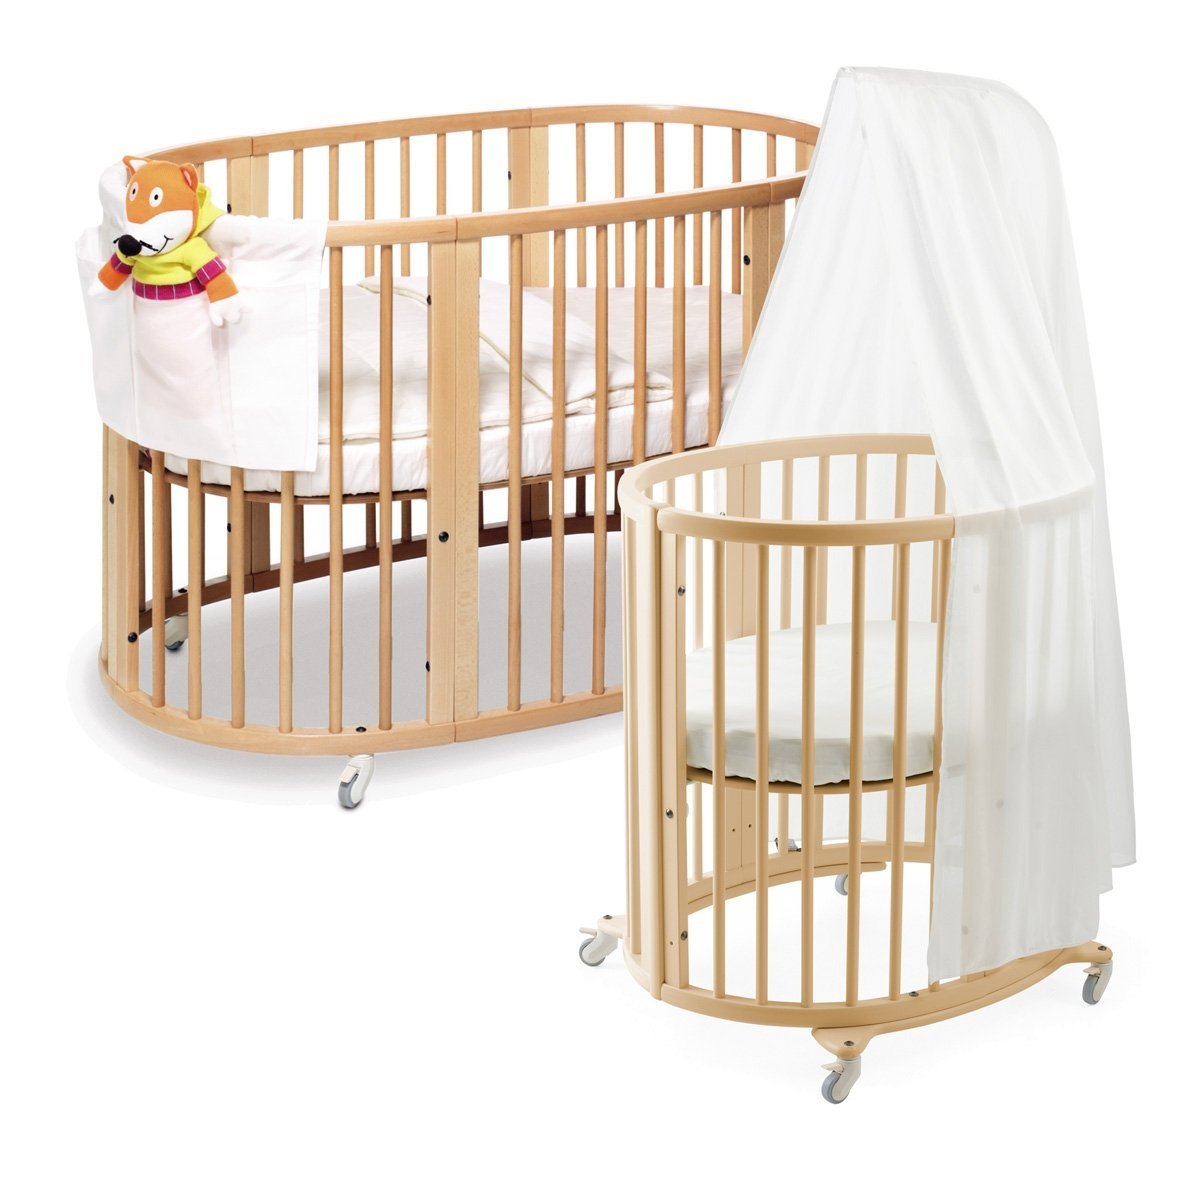 Round crib